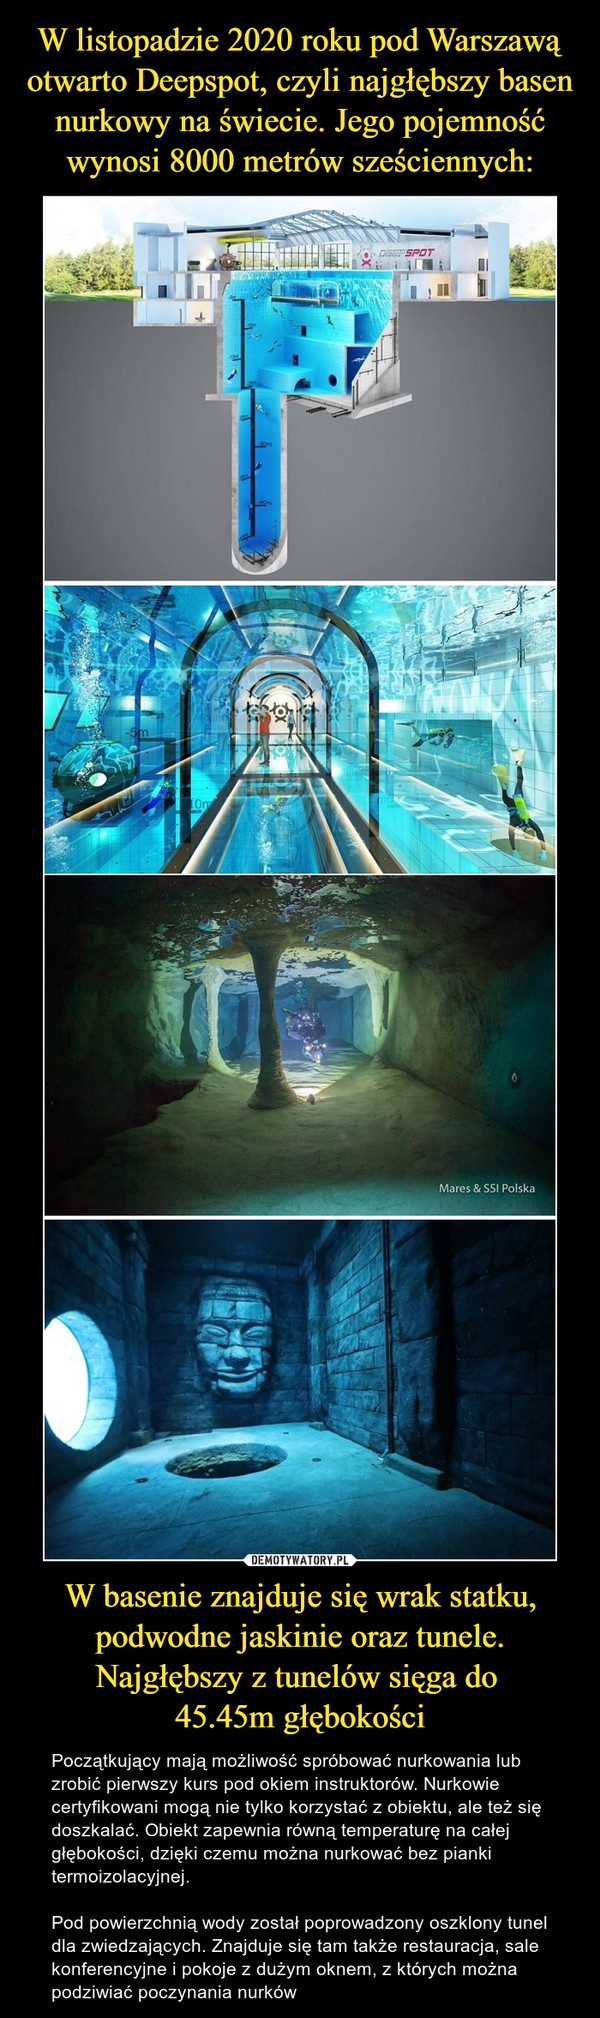 W listopadzie 2020 roku pod Warszawą otwarto Deepspot, czyli najgłębszy basen nurkowy na świecie. Jego pojemność wynosi 8000 metrów sześciennych: W basenie znajduje się wrak statku, podwodne jaskinie oraz tunele. Najgłębszy z tunelów sięga do 
45.45m głębokości